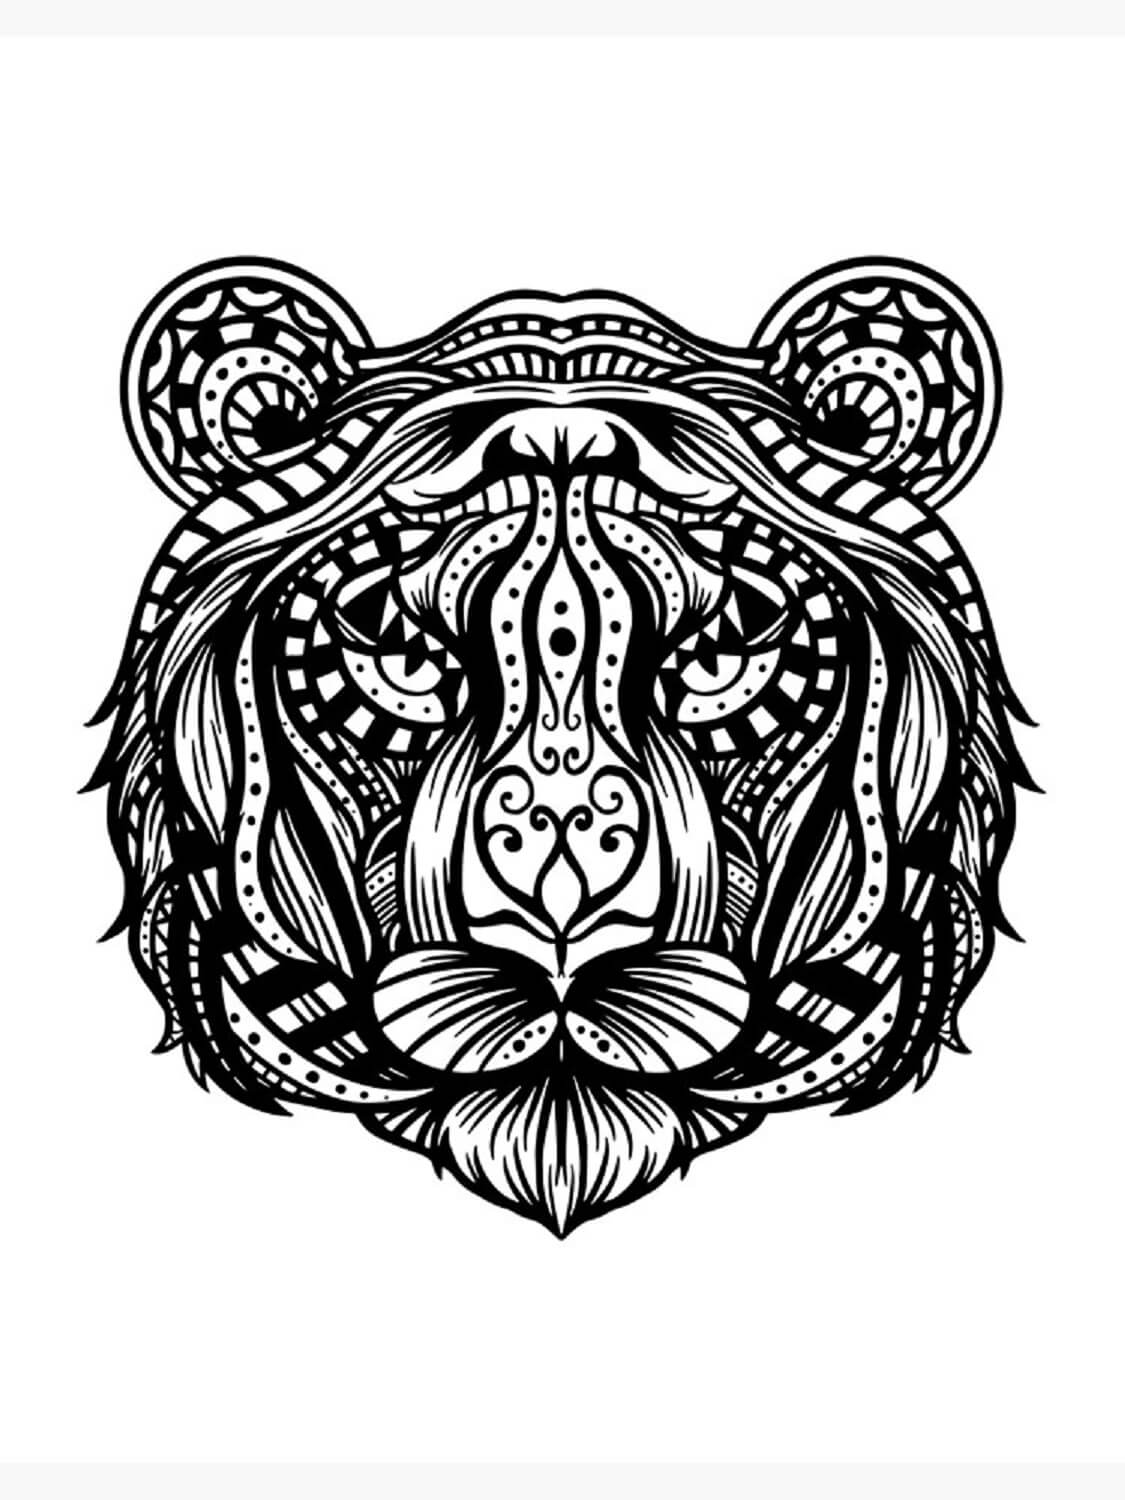 Mandala Tiger Coloring Page - Sheet 10 Mandalas